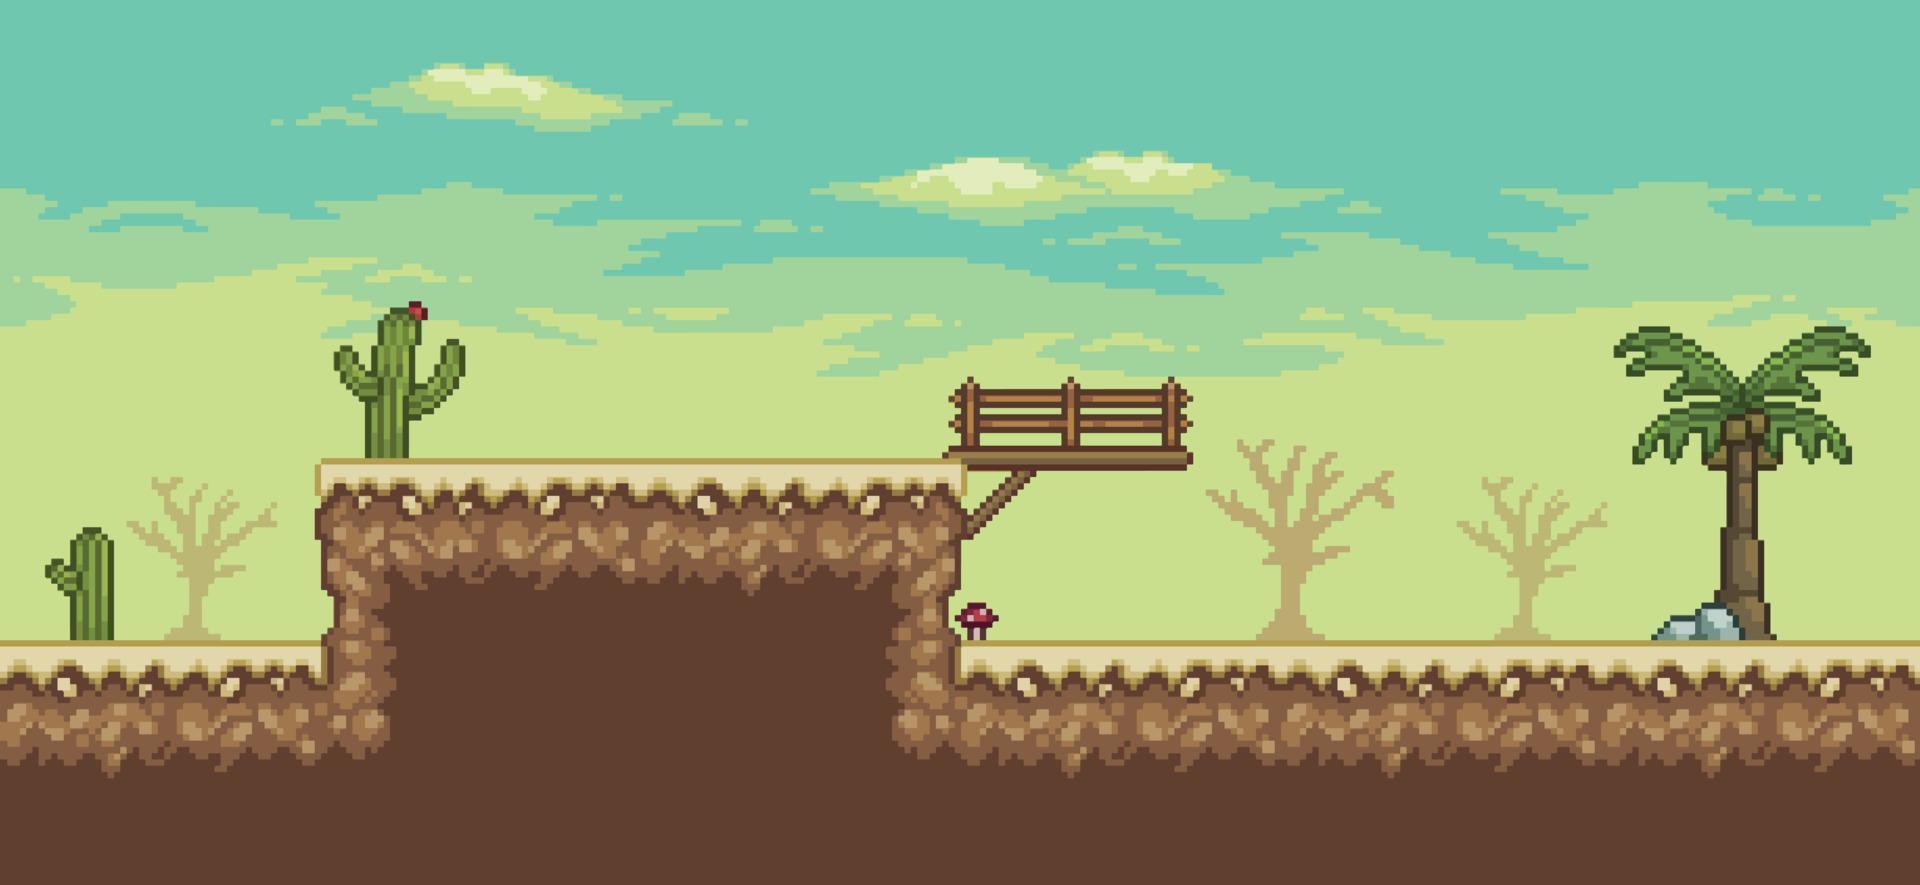 scène de jeu pixel art désert avec palmier, cactus, vecteur de fond pont 8bit